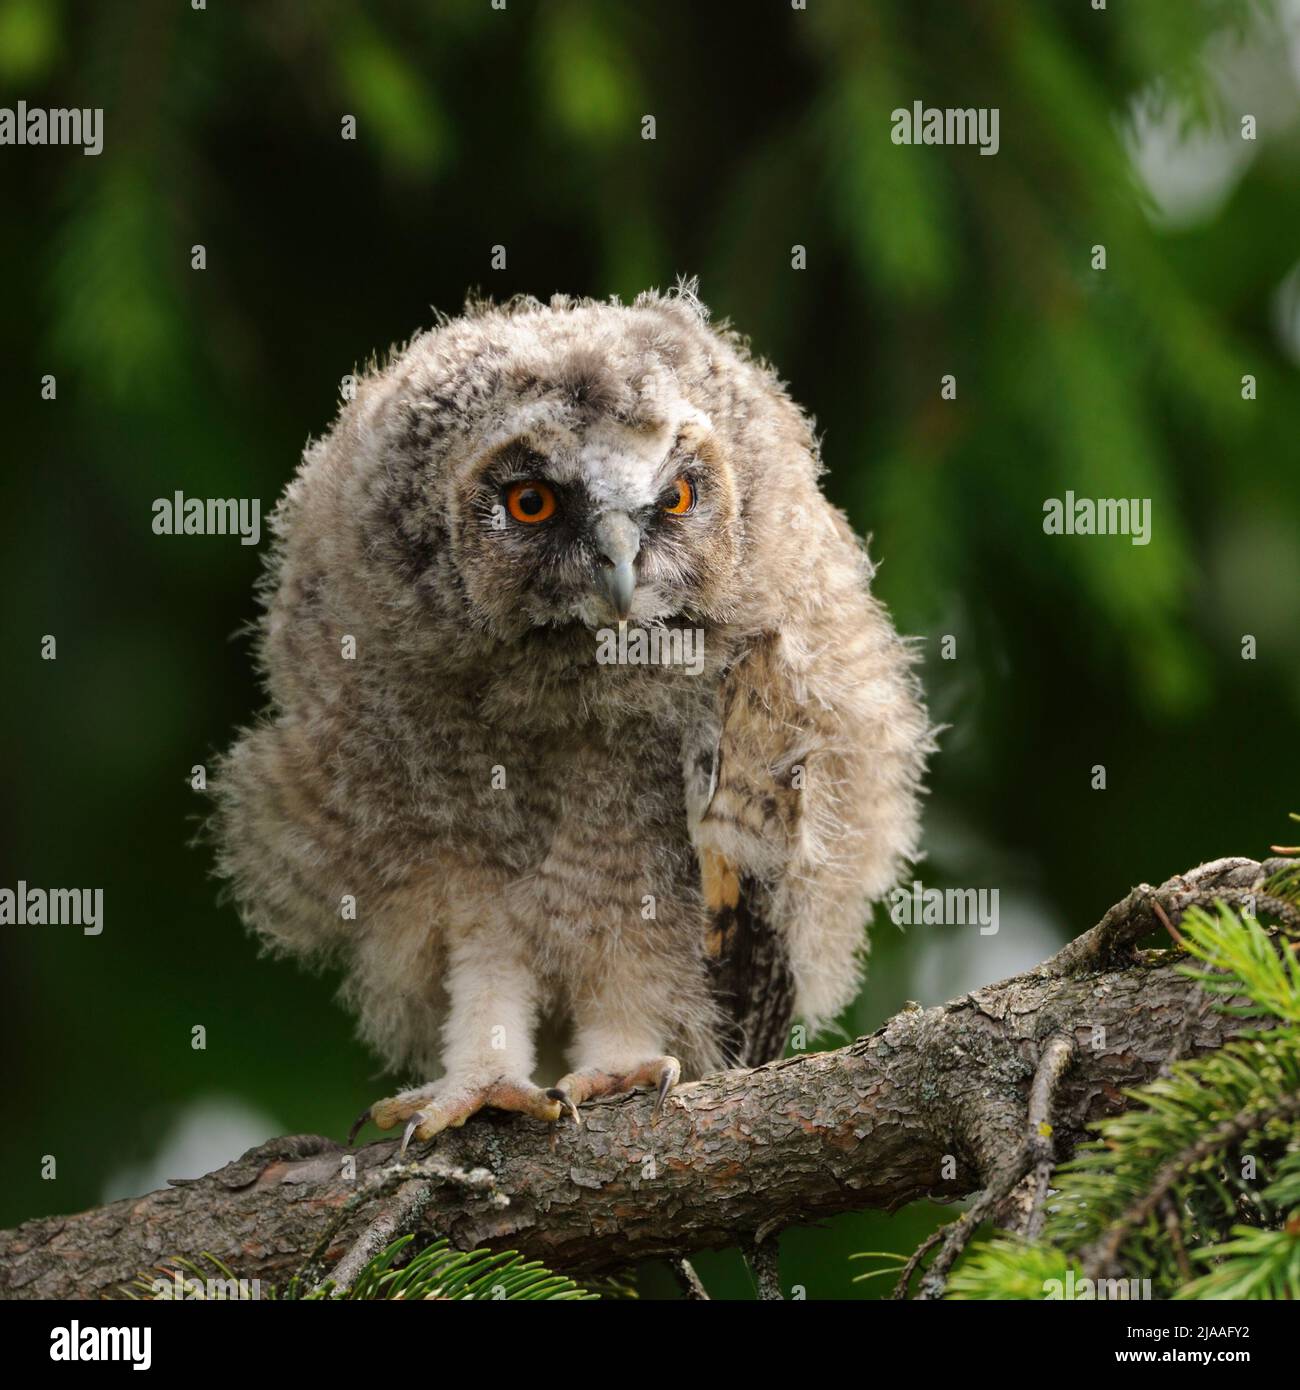 Owl dalle orecchie lunghe / Waldohreule ( Asio otus ), pulcino giovane, appena fatto, arroccato in un albero, guarda attento, guardando, peeking attenzionalmente, serio, jolly Foto Stock